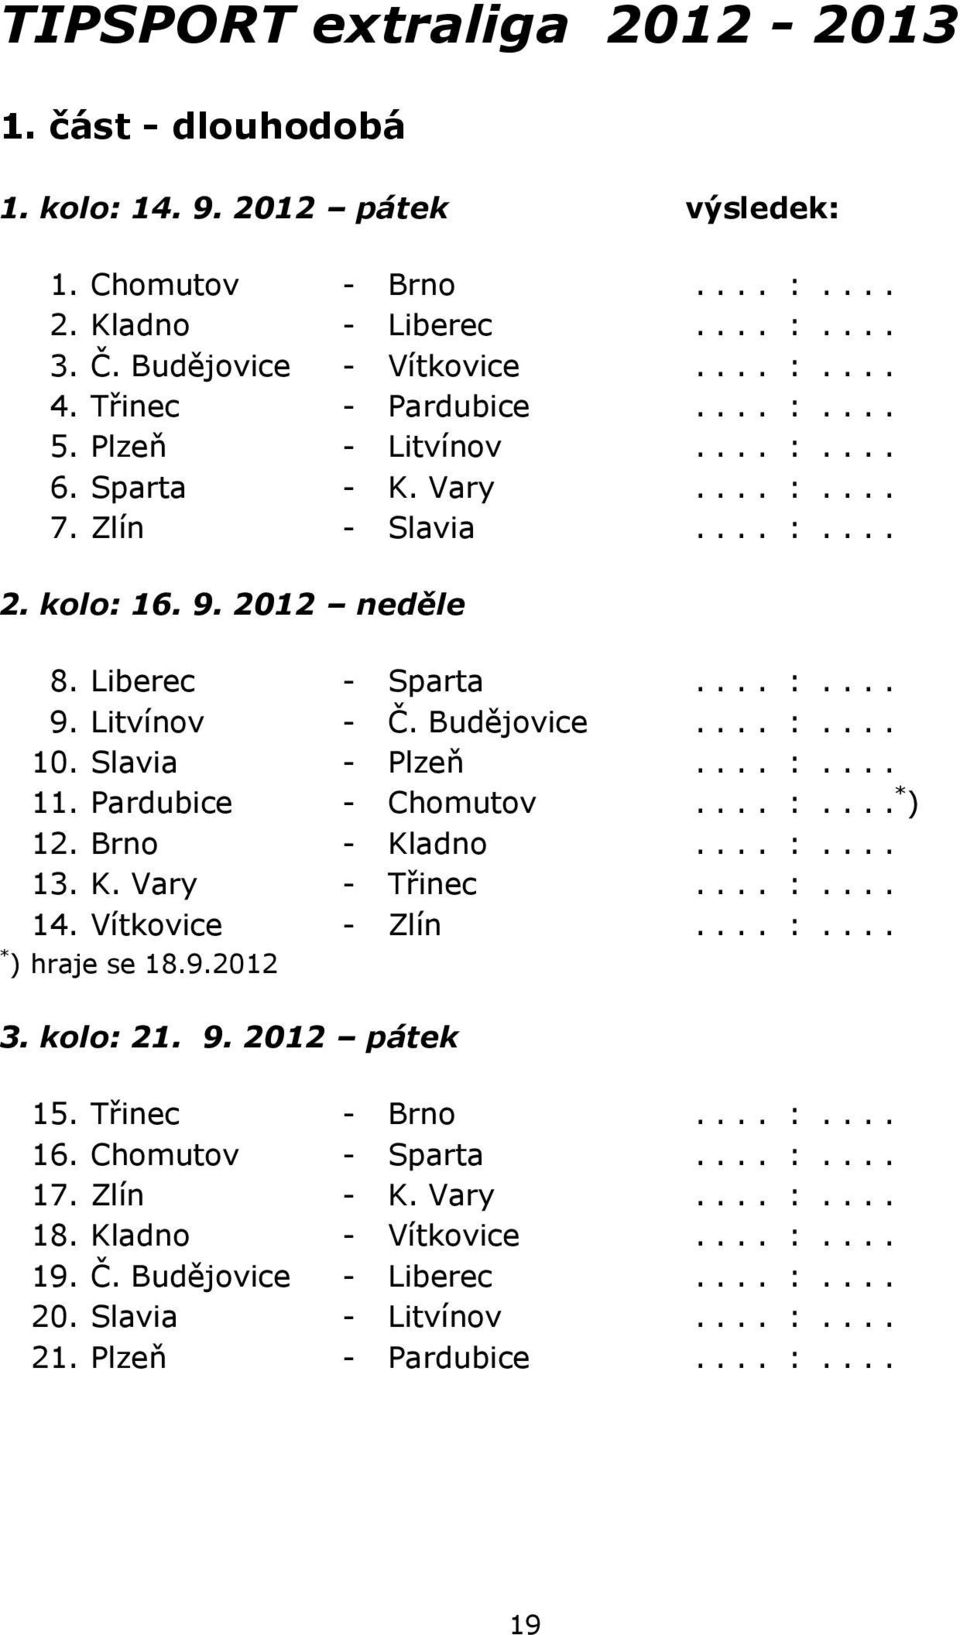 Budějovice.... :.... 10. Slavia - Plzeň.... :.... 11. Pardubice - Chomutov.... :.... * ) 12. Brno - Kladno.... :.... 13. K. Vary - Třinec.... :.... 14. Vítkovice - Zlín.... :.... * ) hraje se 18.9.